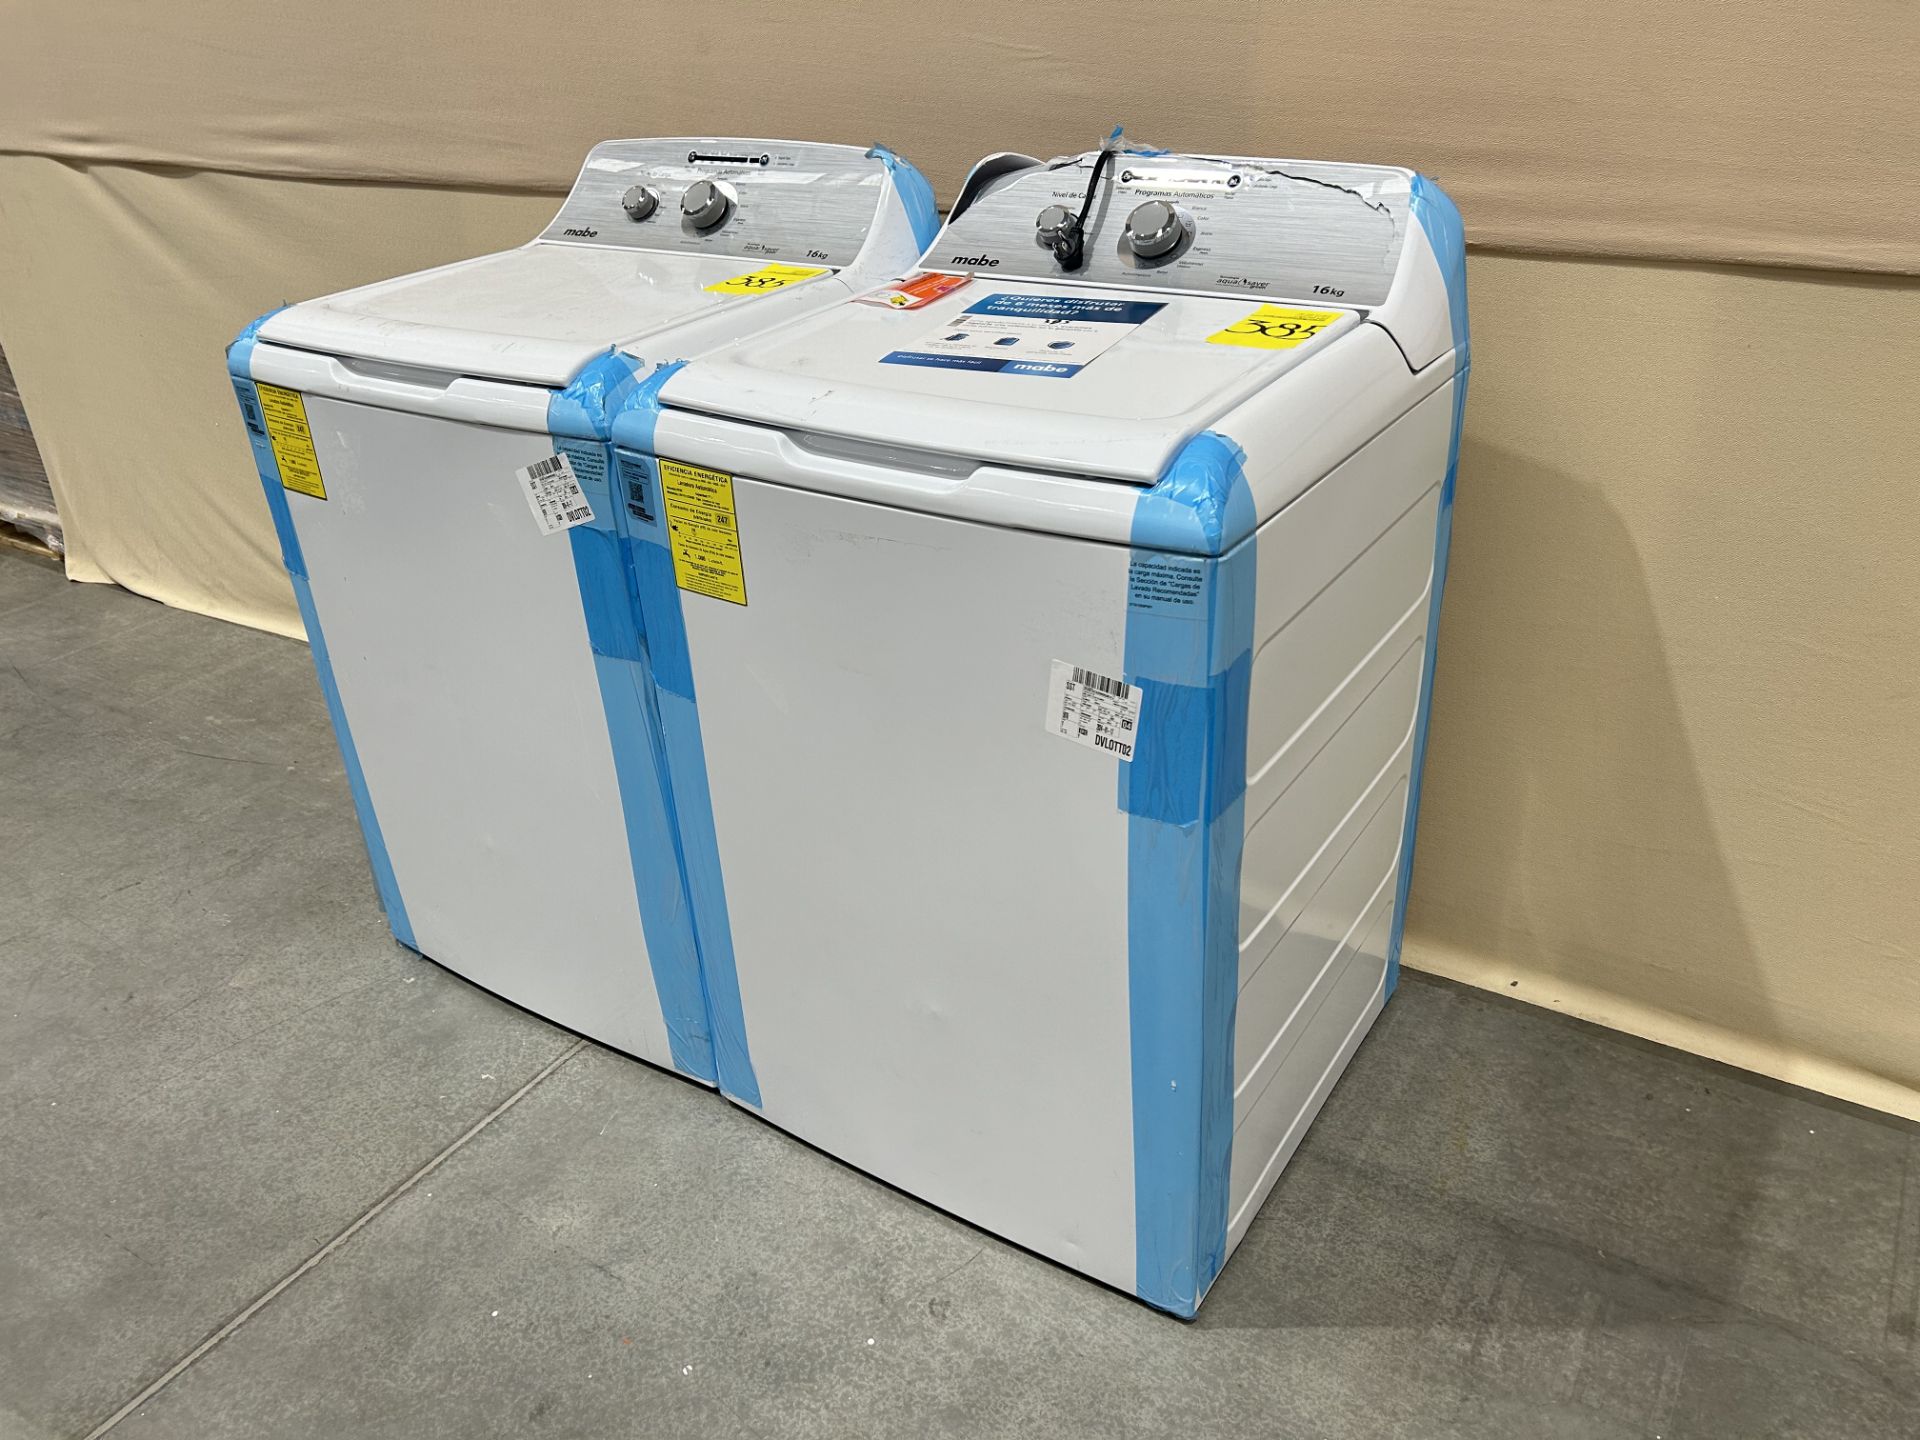 Lote de 2 lavadoras contiene: 1 Lavadora de 16 KG Marca MABE, Modelo LMA76112CBAB02, Serie S66192, - Image 2 of 8